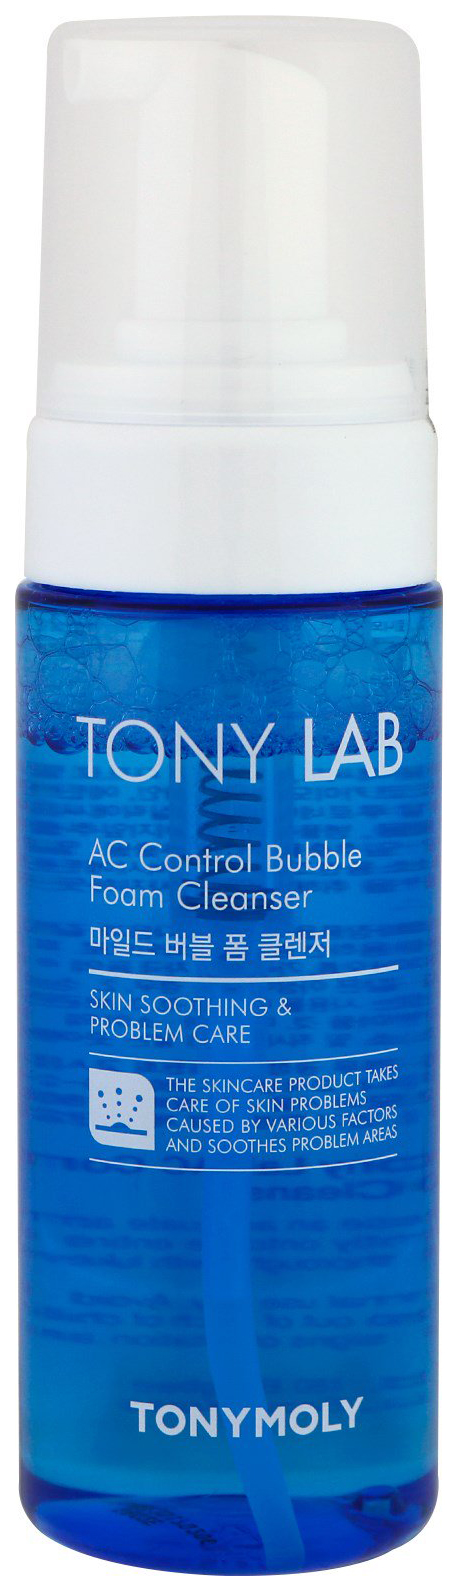 Пенка-мусс для умывания TONY MOLY Tony Lab AC Control для проблемной кожи, 150 мл